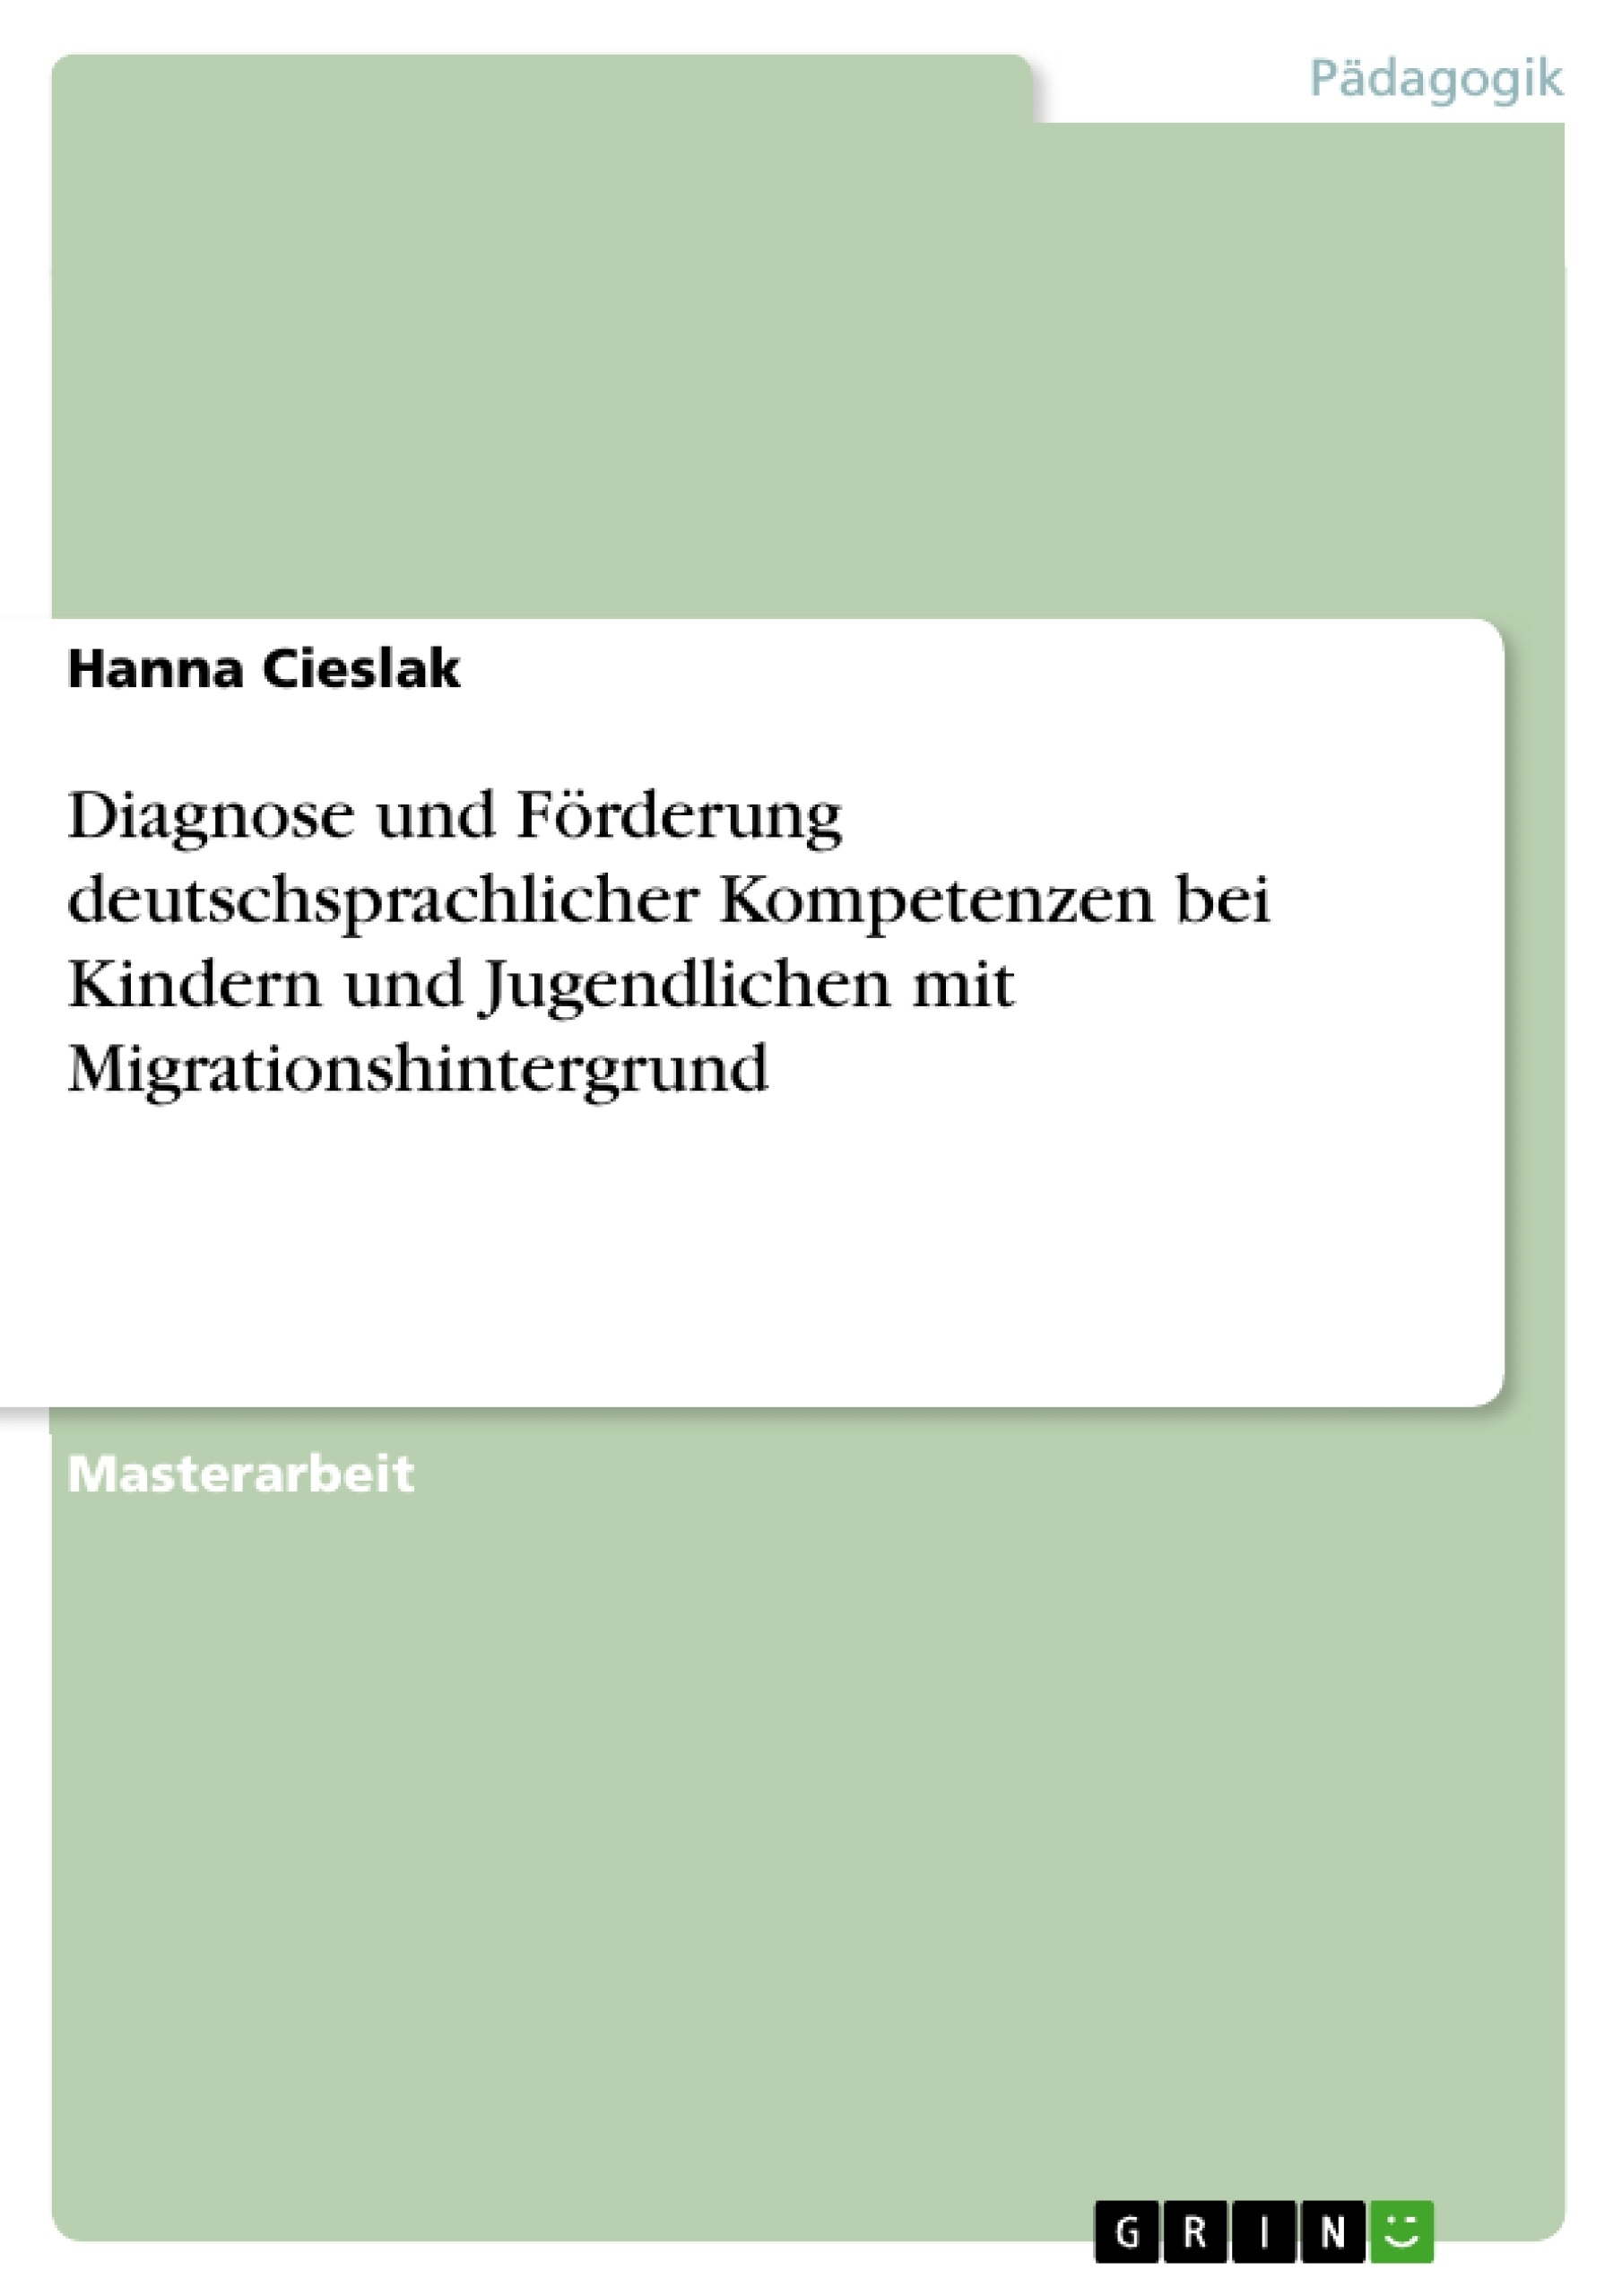 Title: Diagnose und Förderung  deutschsprachlicher Kompetenzen  bei Kindern und Jugendlichen mit  Migrationshintergrund  